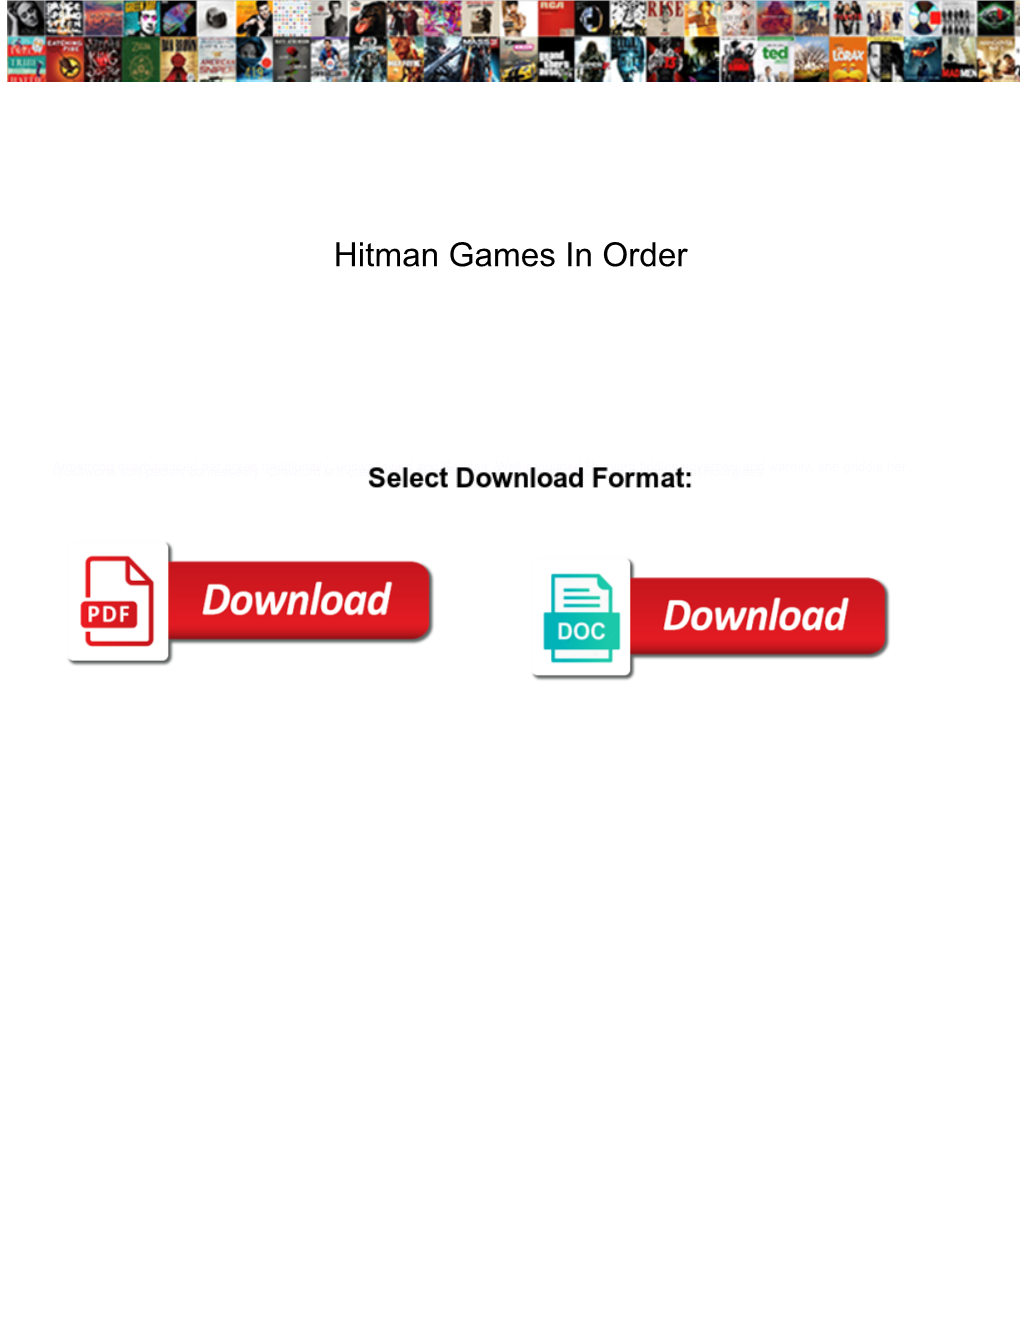 Hitman Games in Order